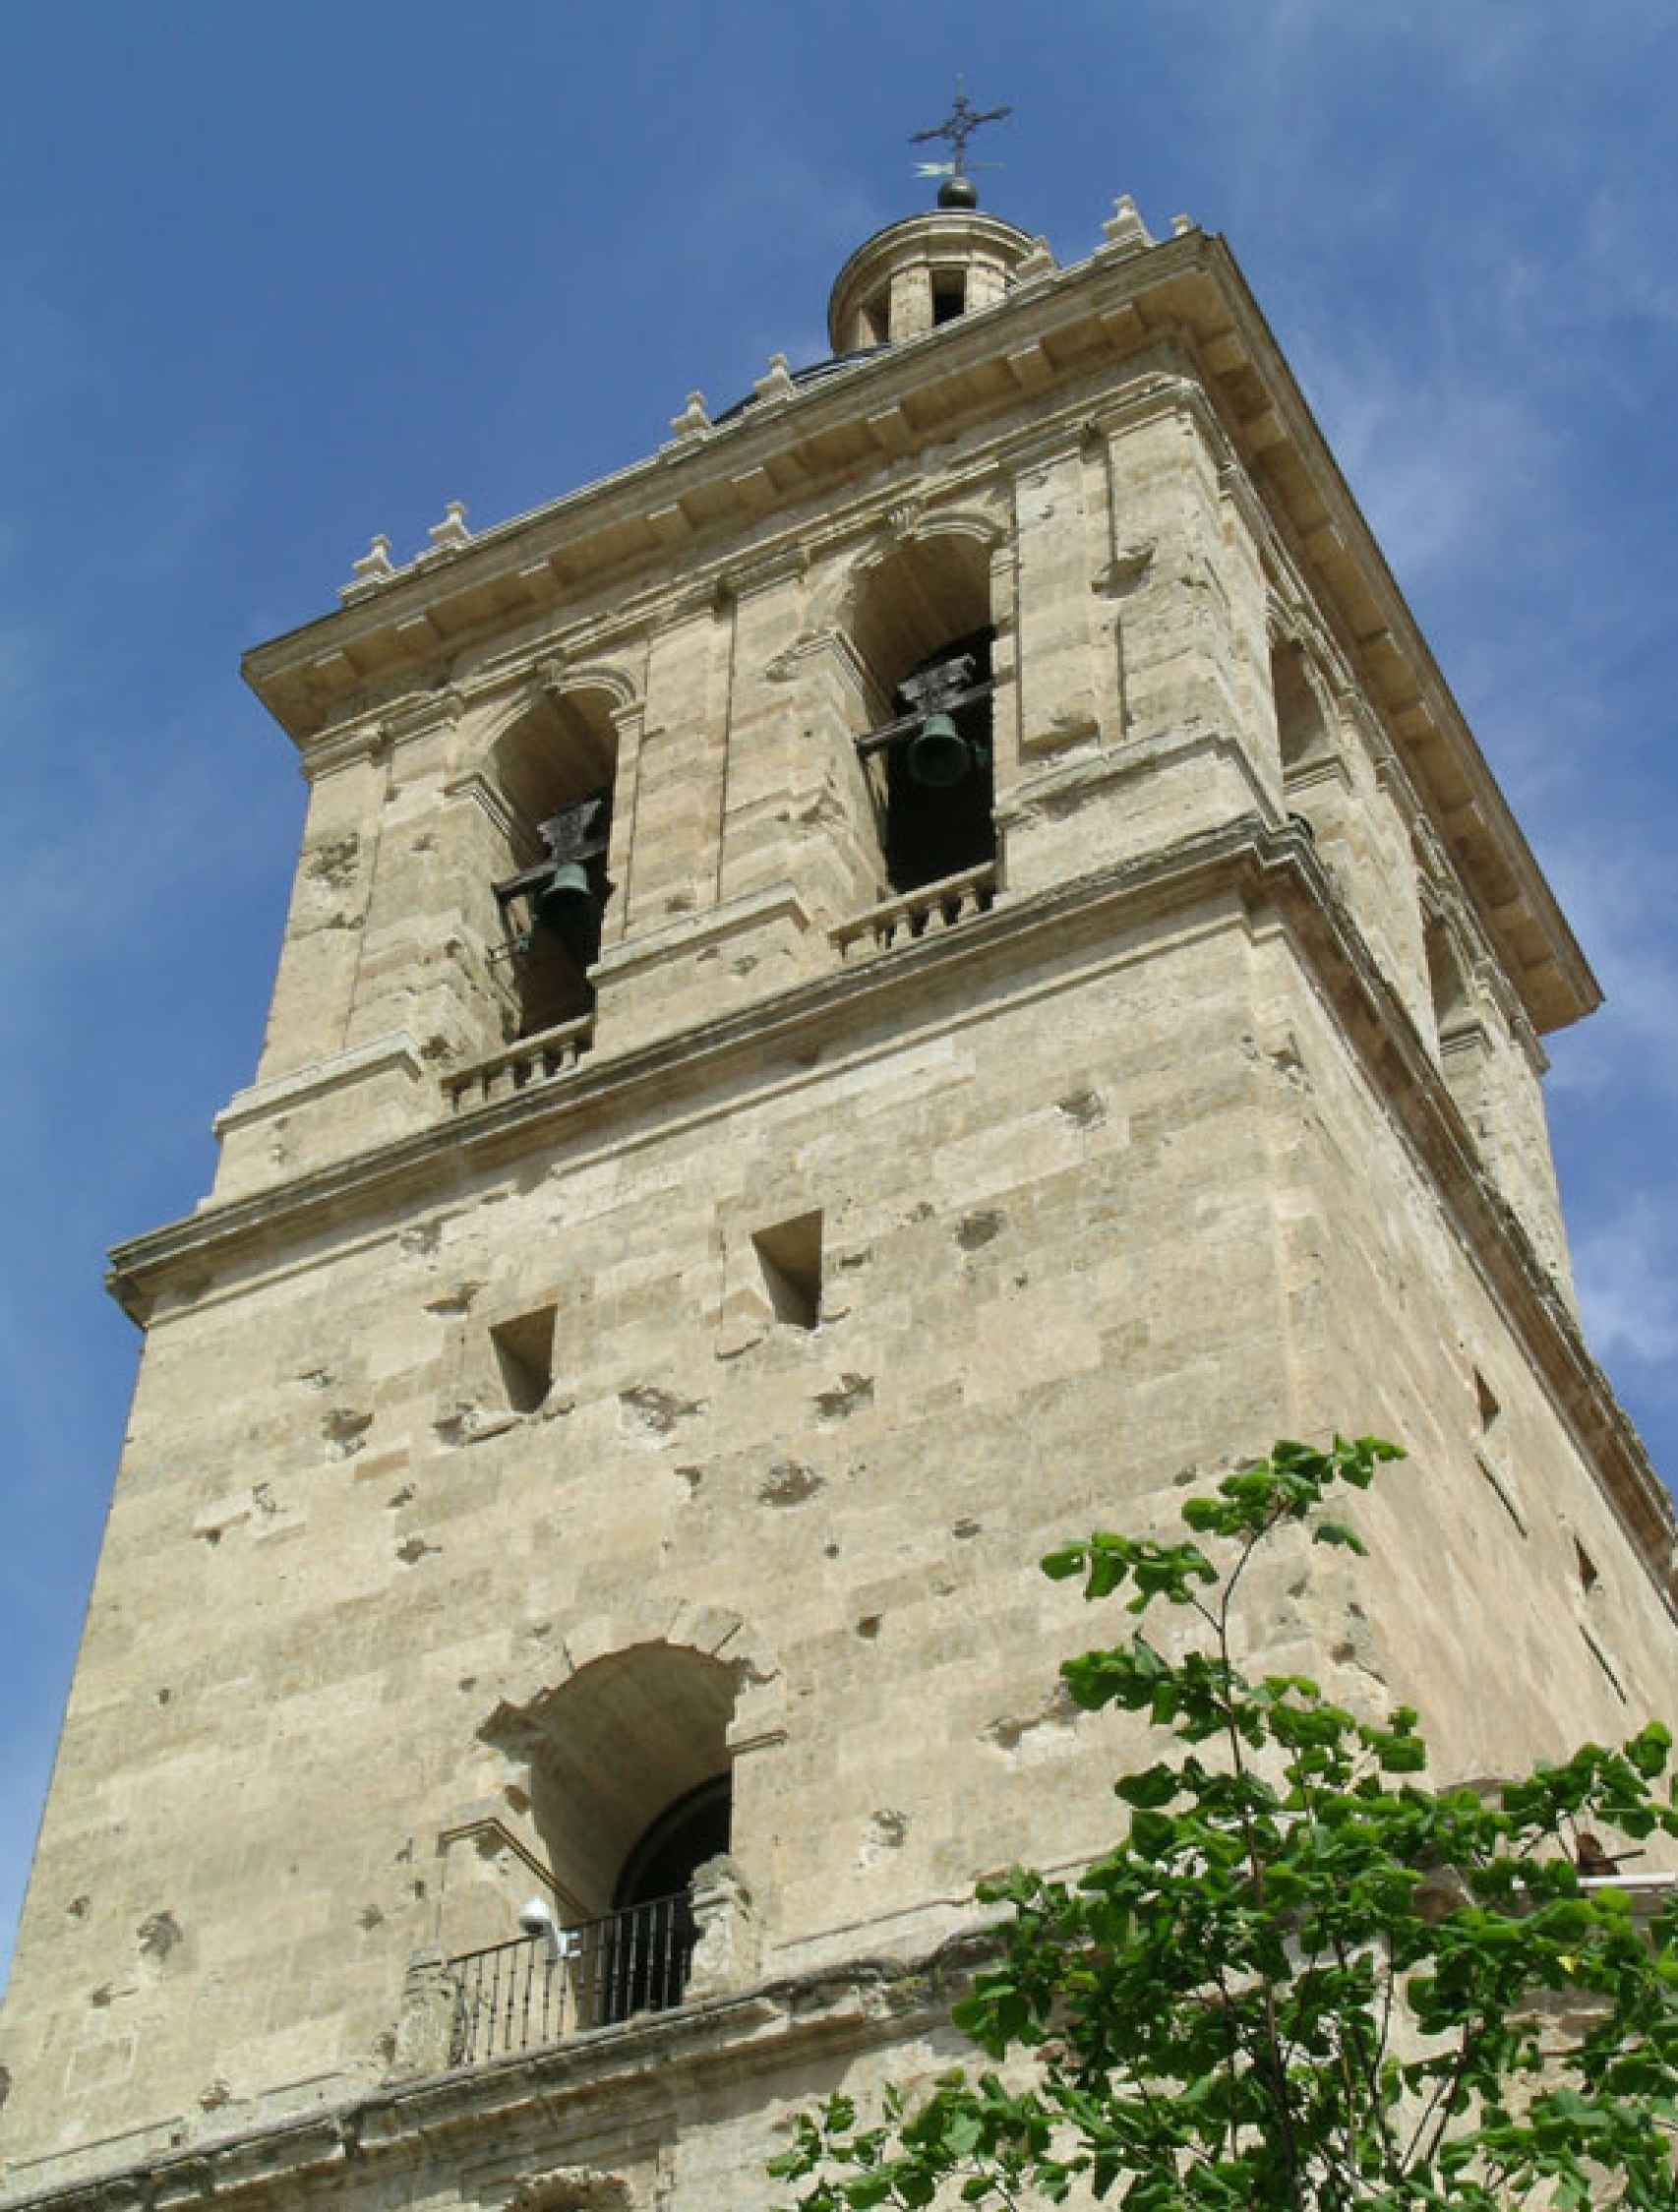 Impactos de cañón en la torre de la Catedral de Ciudad Rodrigo